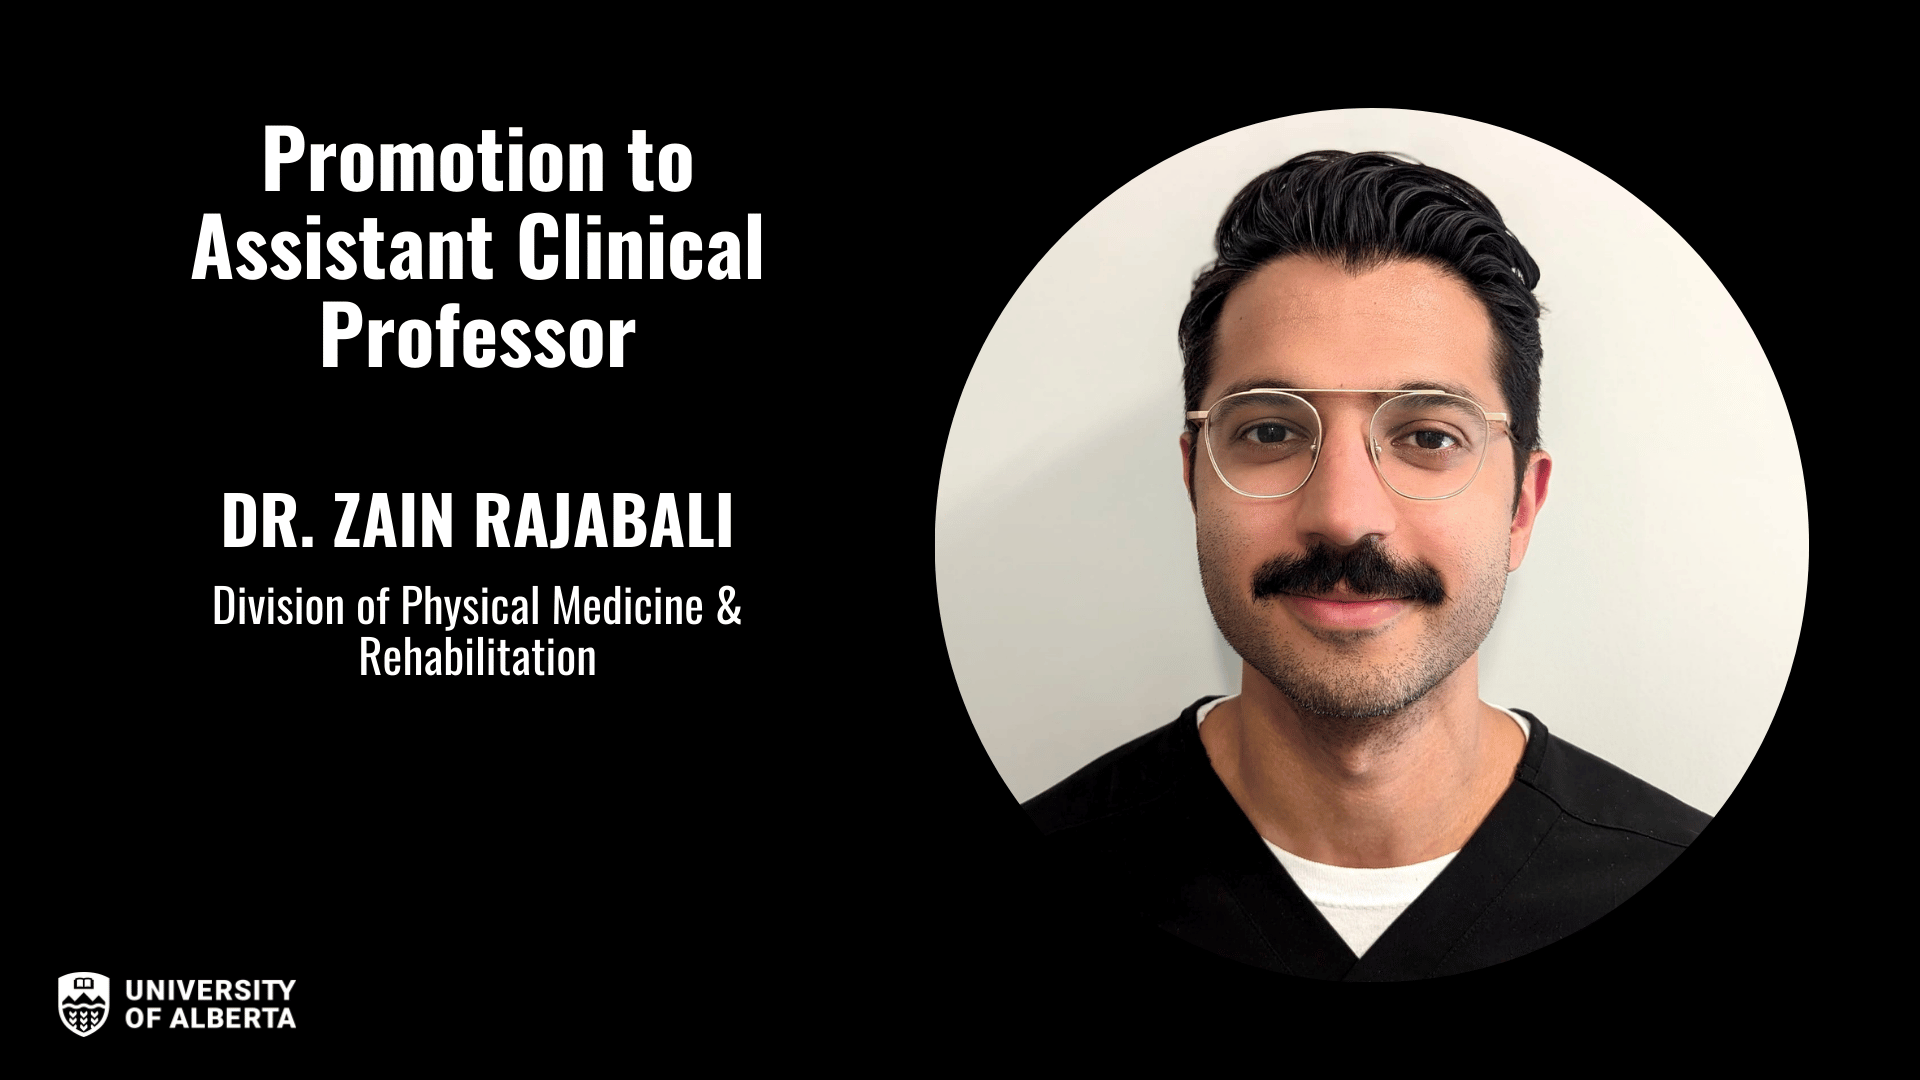 Dr. Zain Rajabali